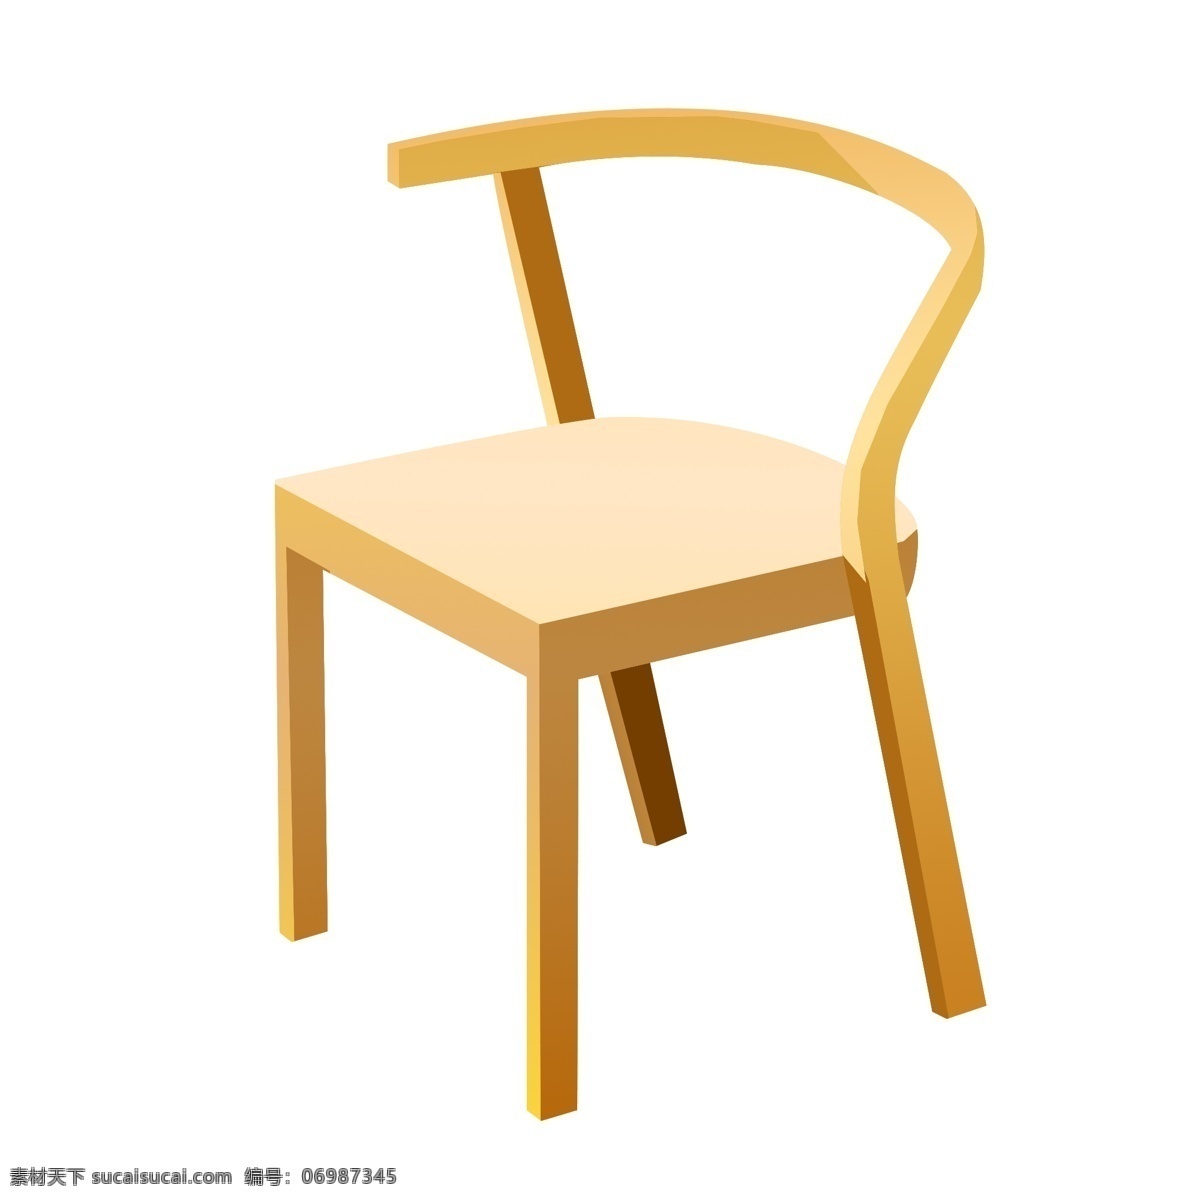 手绘 实木 椅子 插画 家具 餐椅 插图 木头 实木椅子 手绘椅子 椅子插画 椅子插图 餐桌椅子